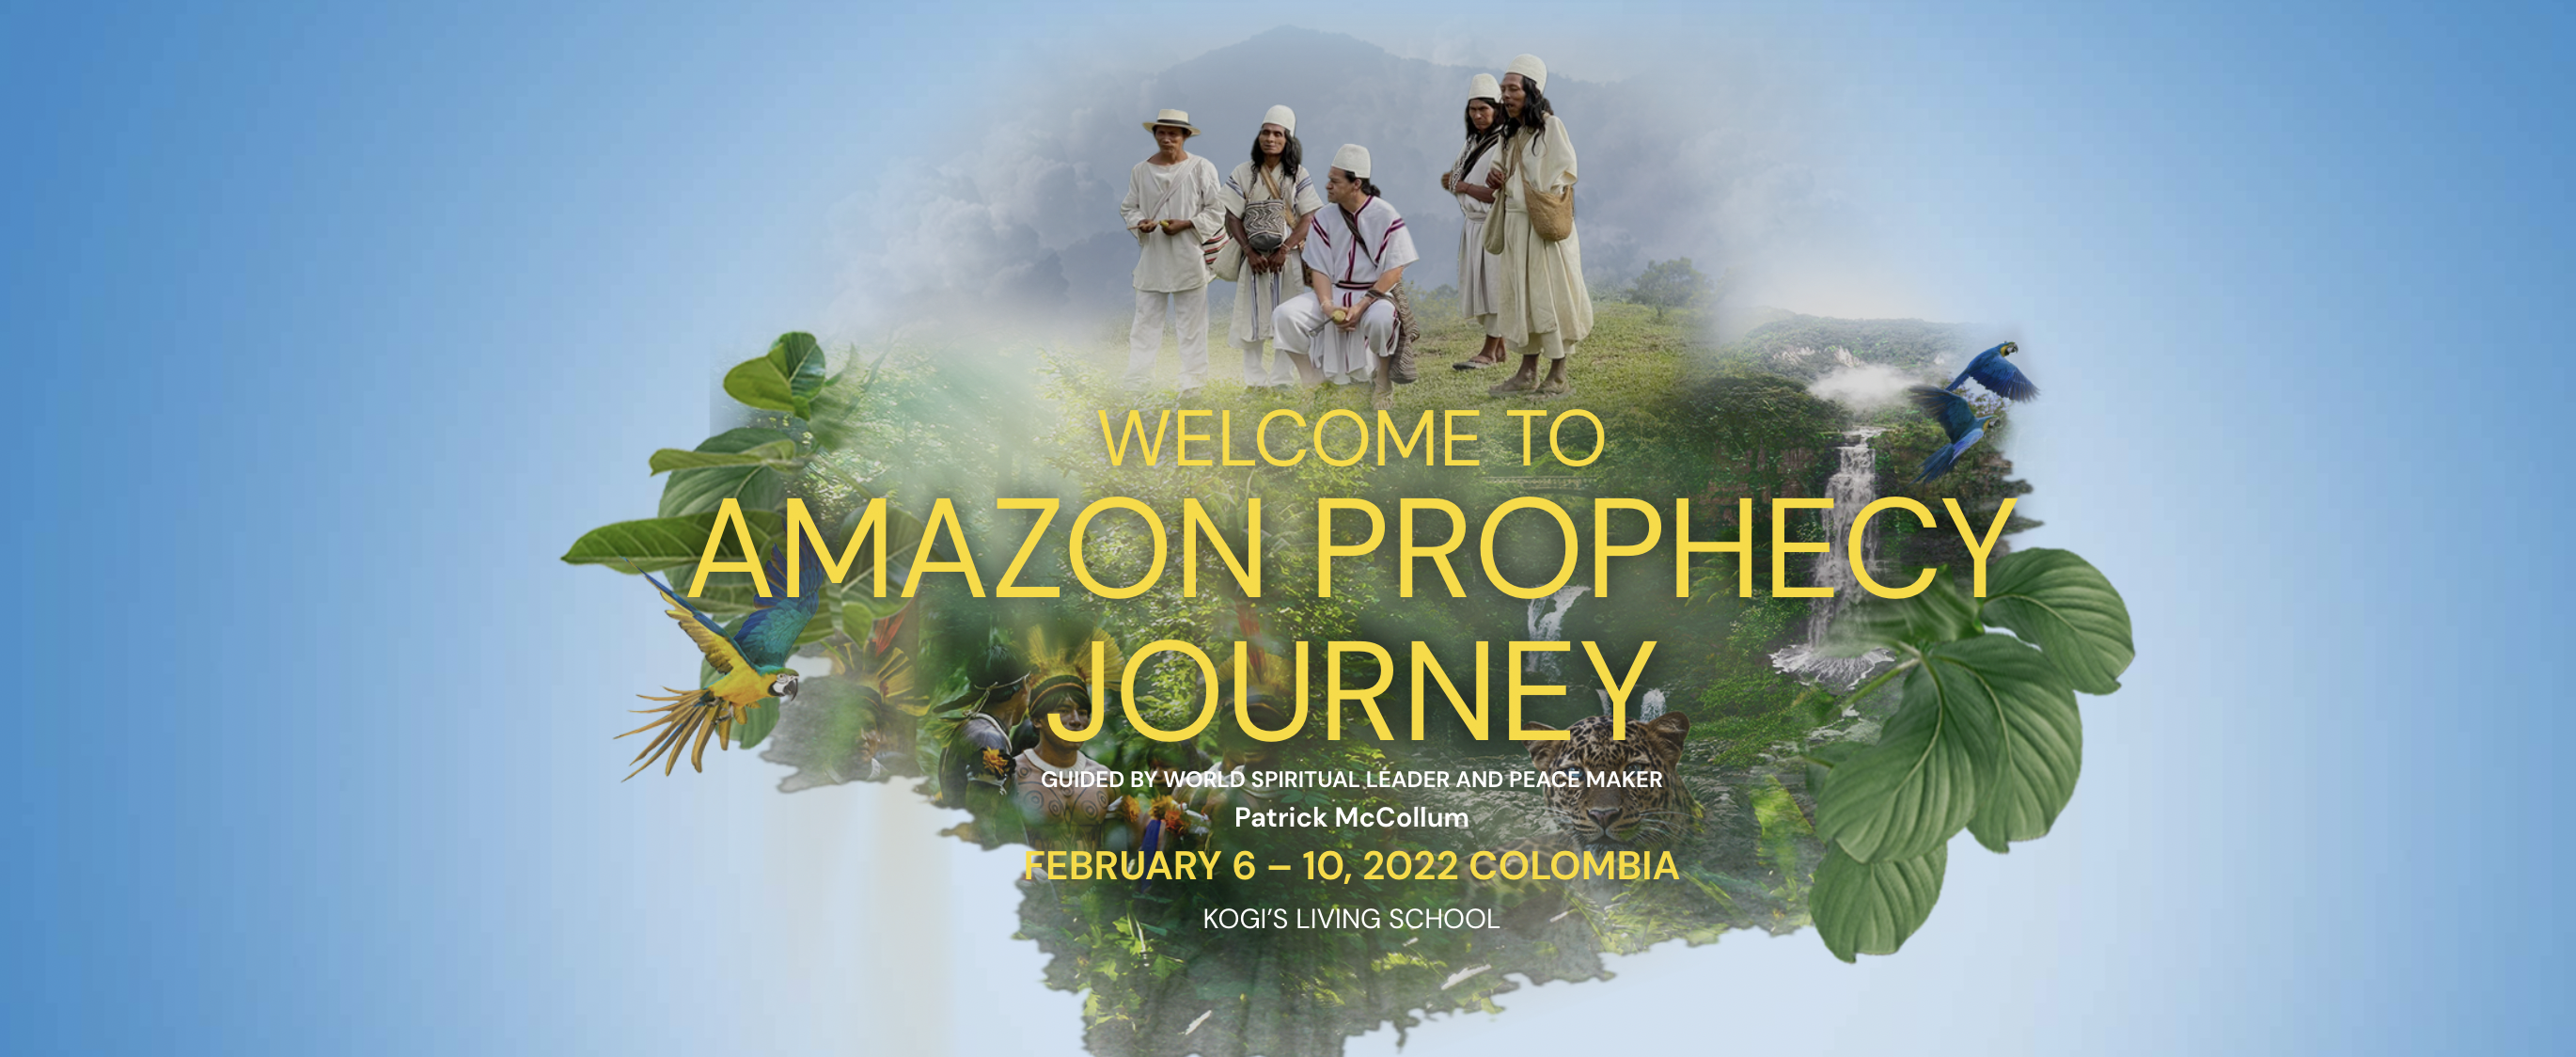 Amazon Prophecy Journey